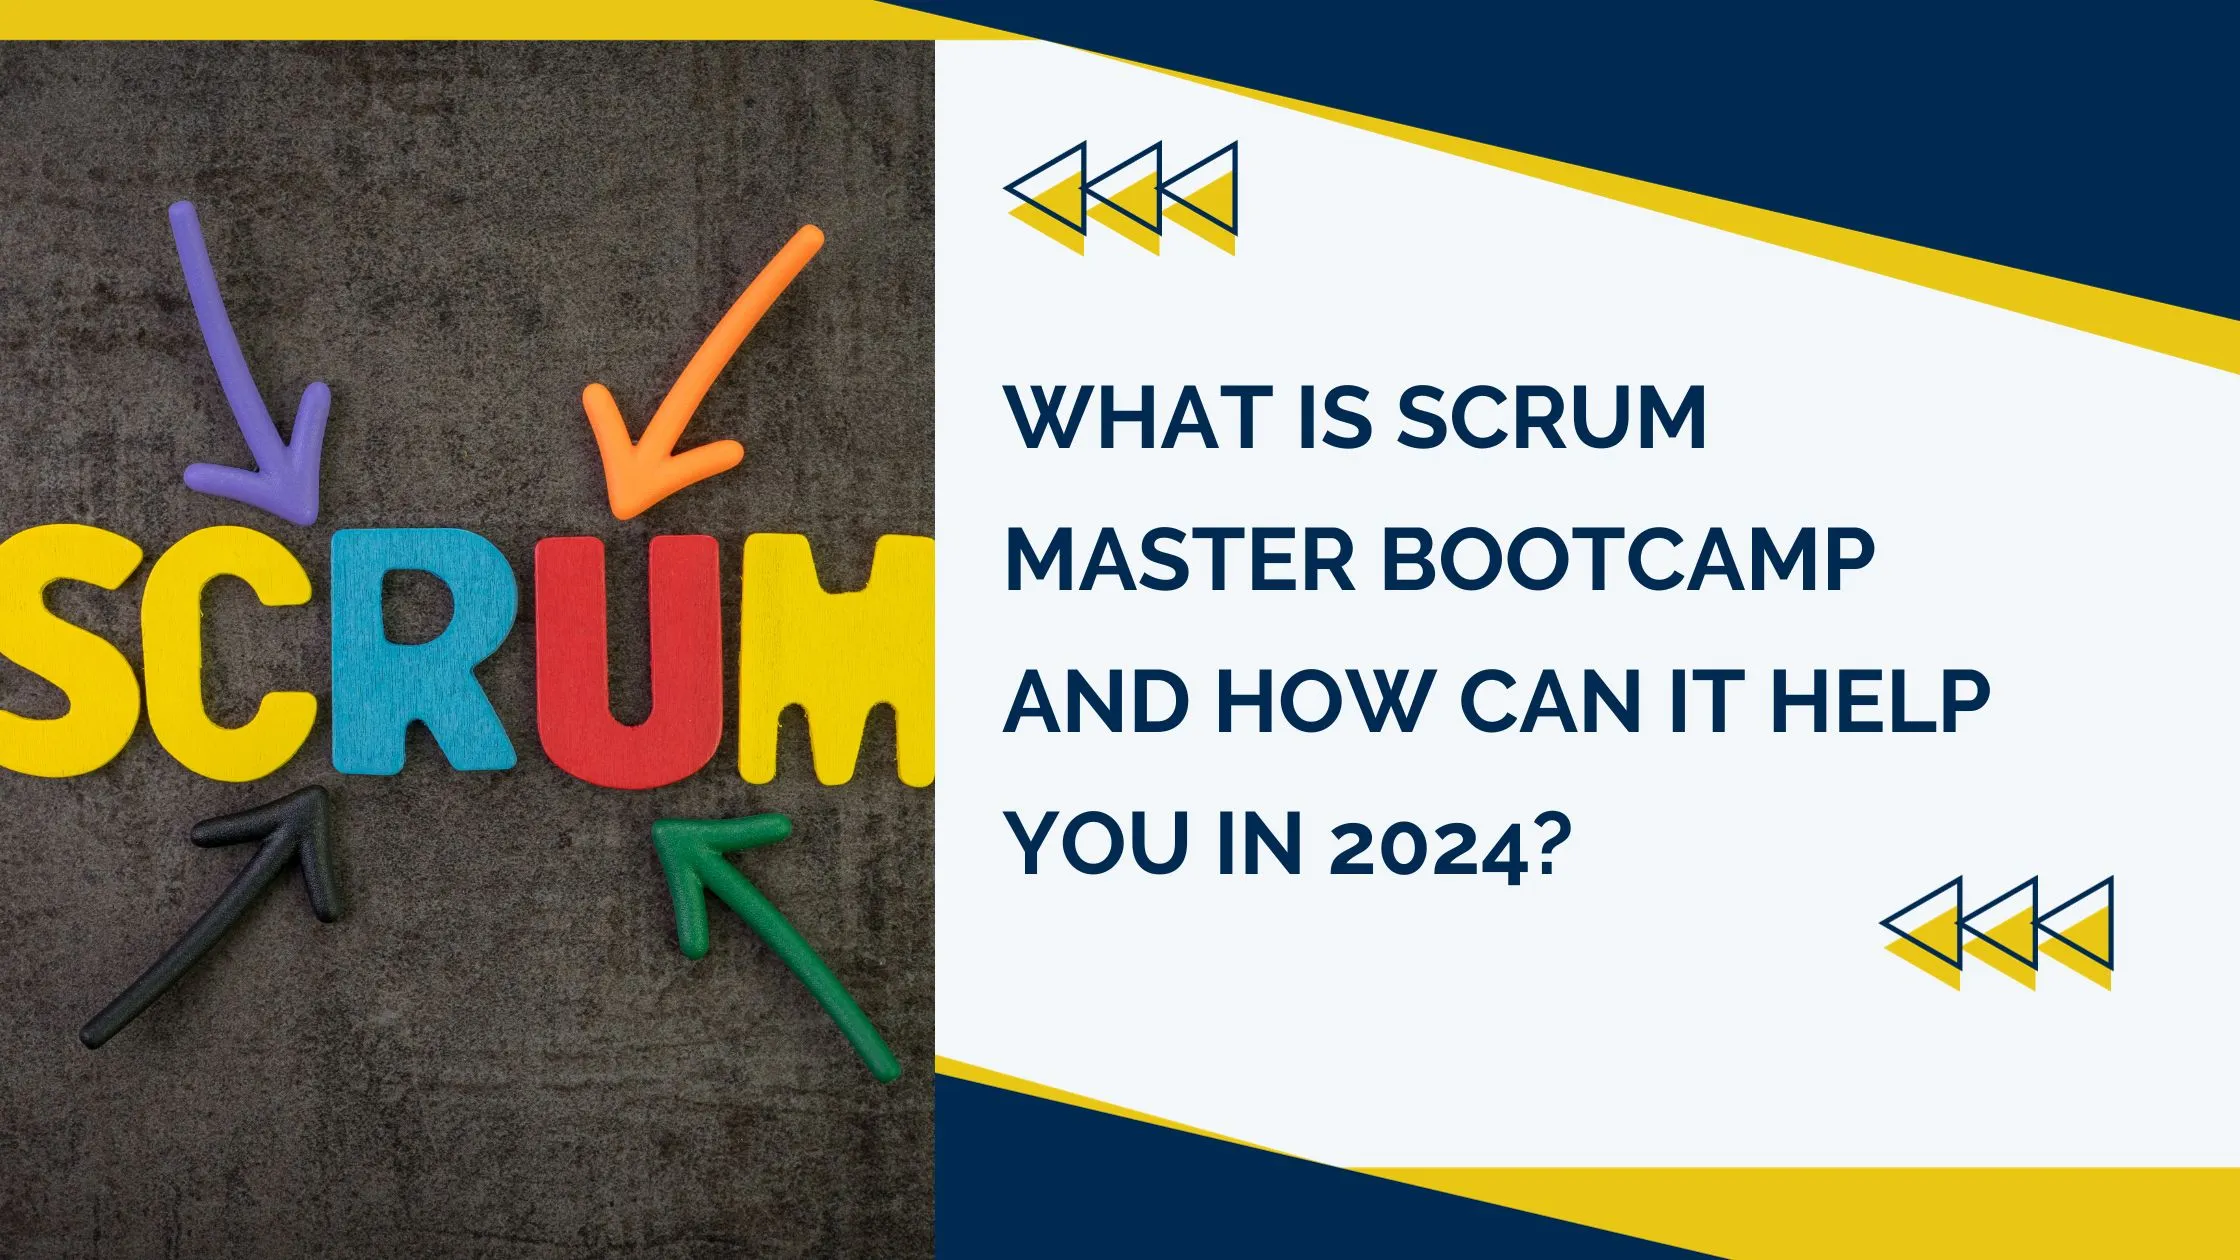 Scrum Master Bootcamp